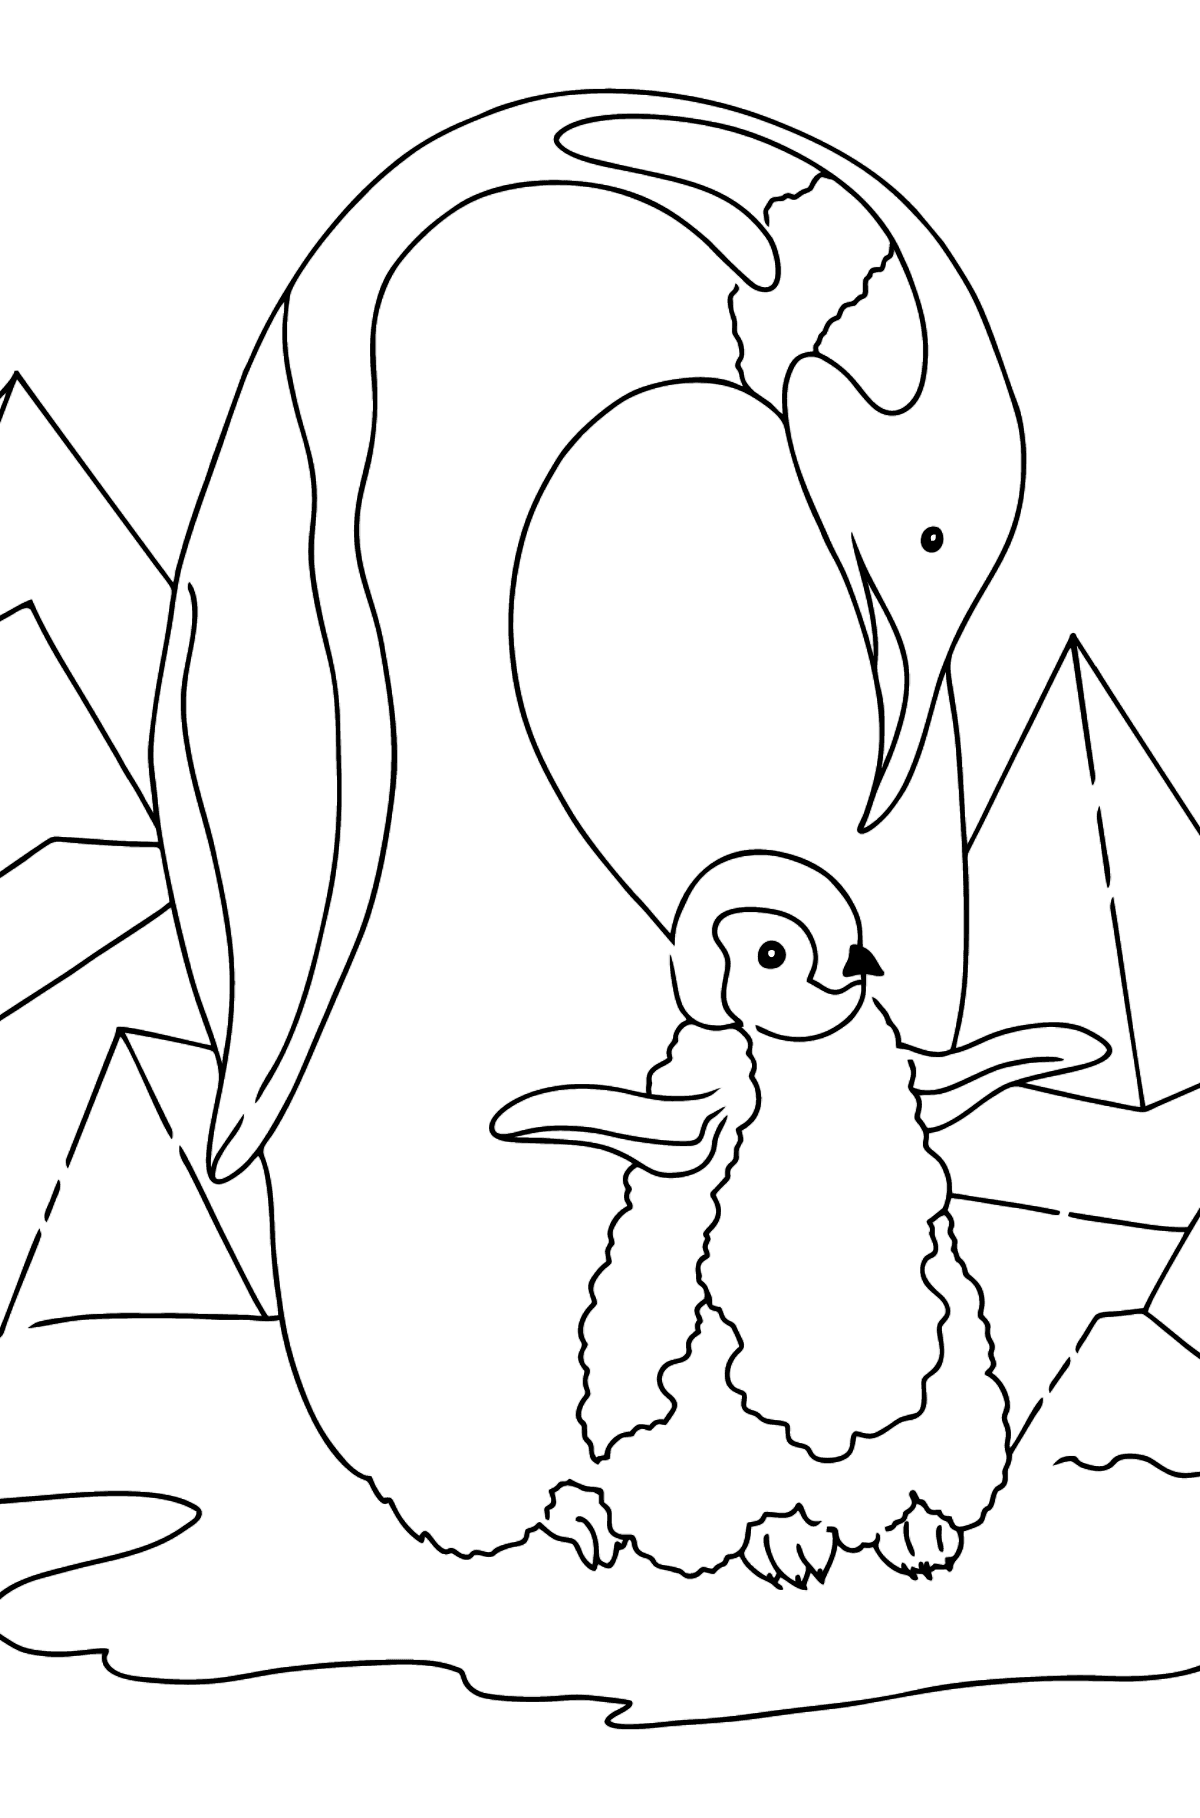 Boyama sayfası penguen (basit) - Boyamalar çocuklar için